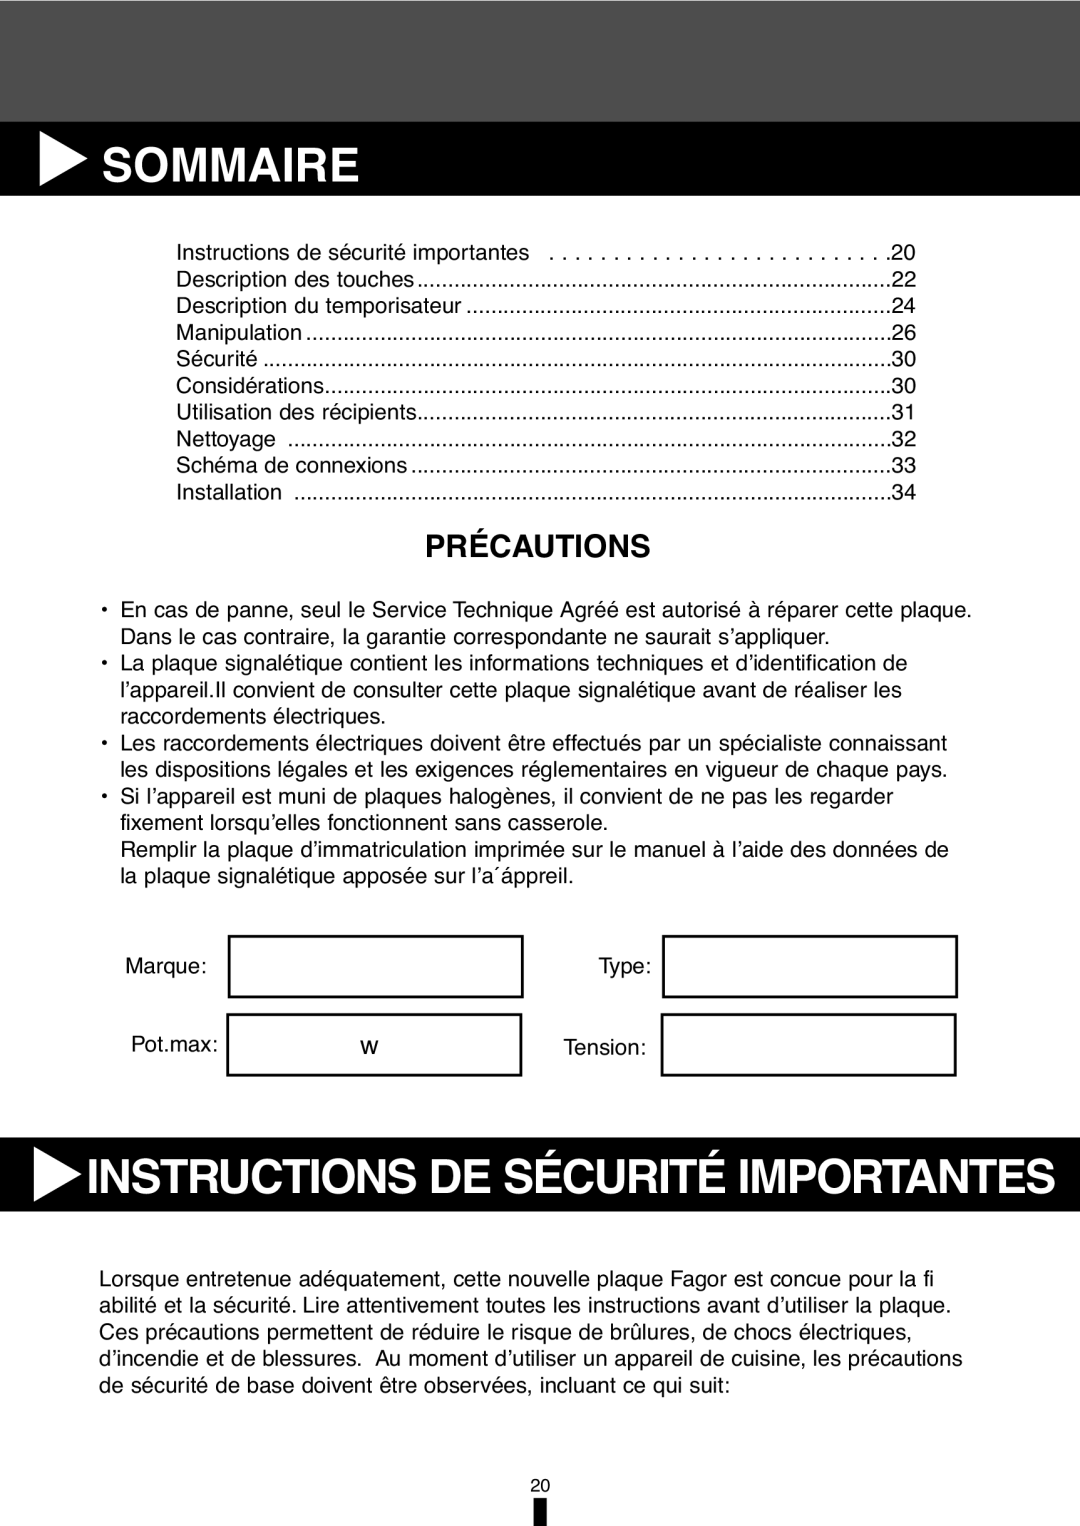 Fagor America VFA-78 S, VFA-70 S manual Sommaire, Précautions, Instructions De Sécurité Importantes 